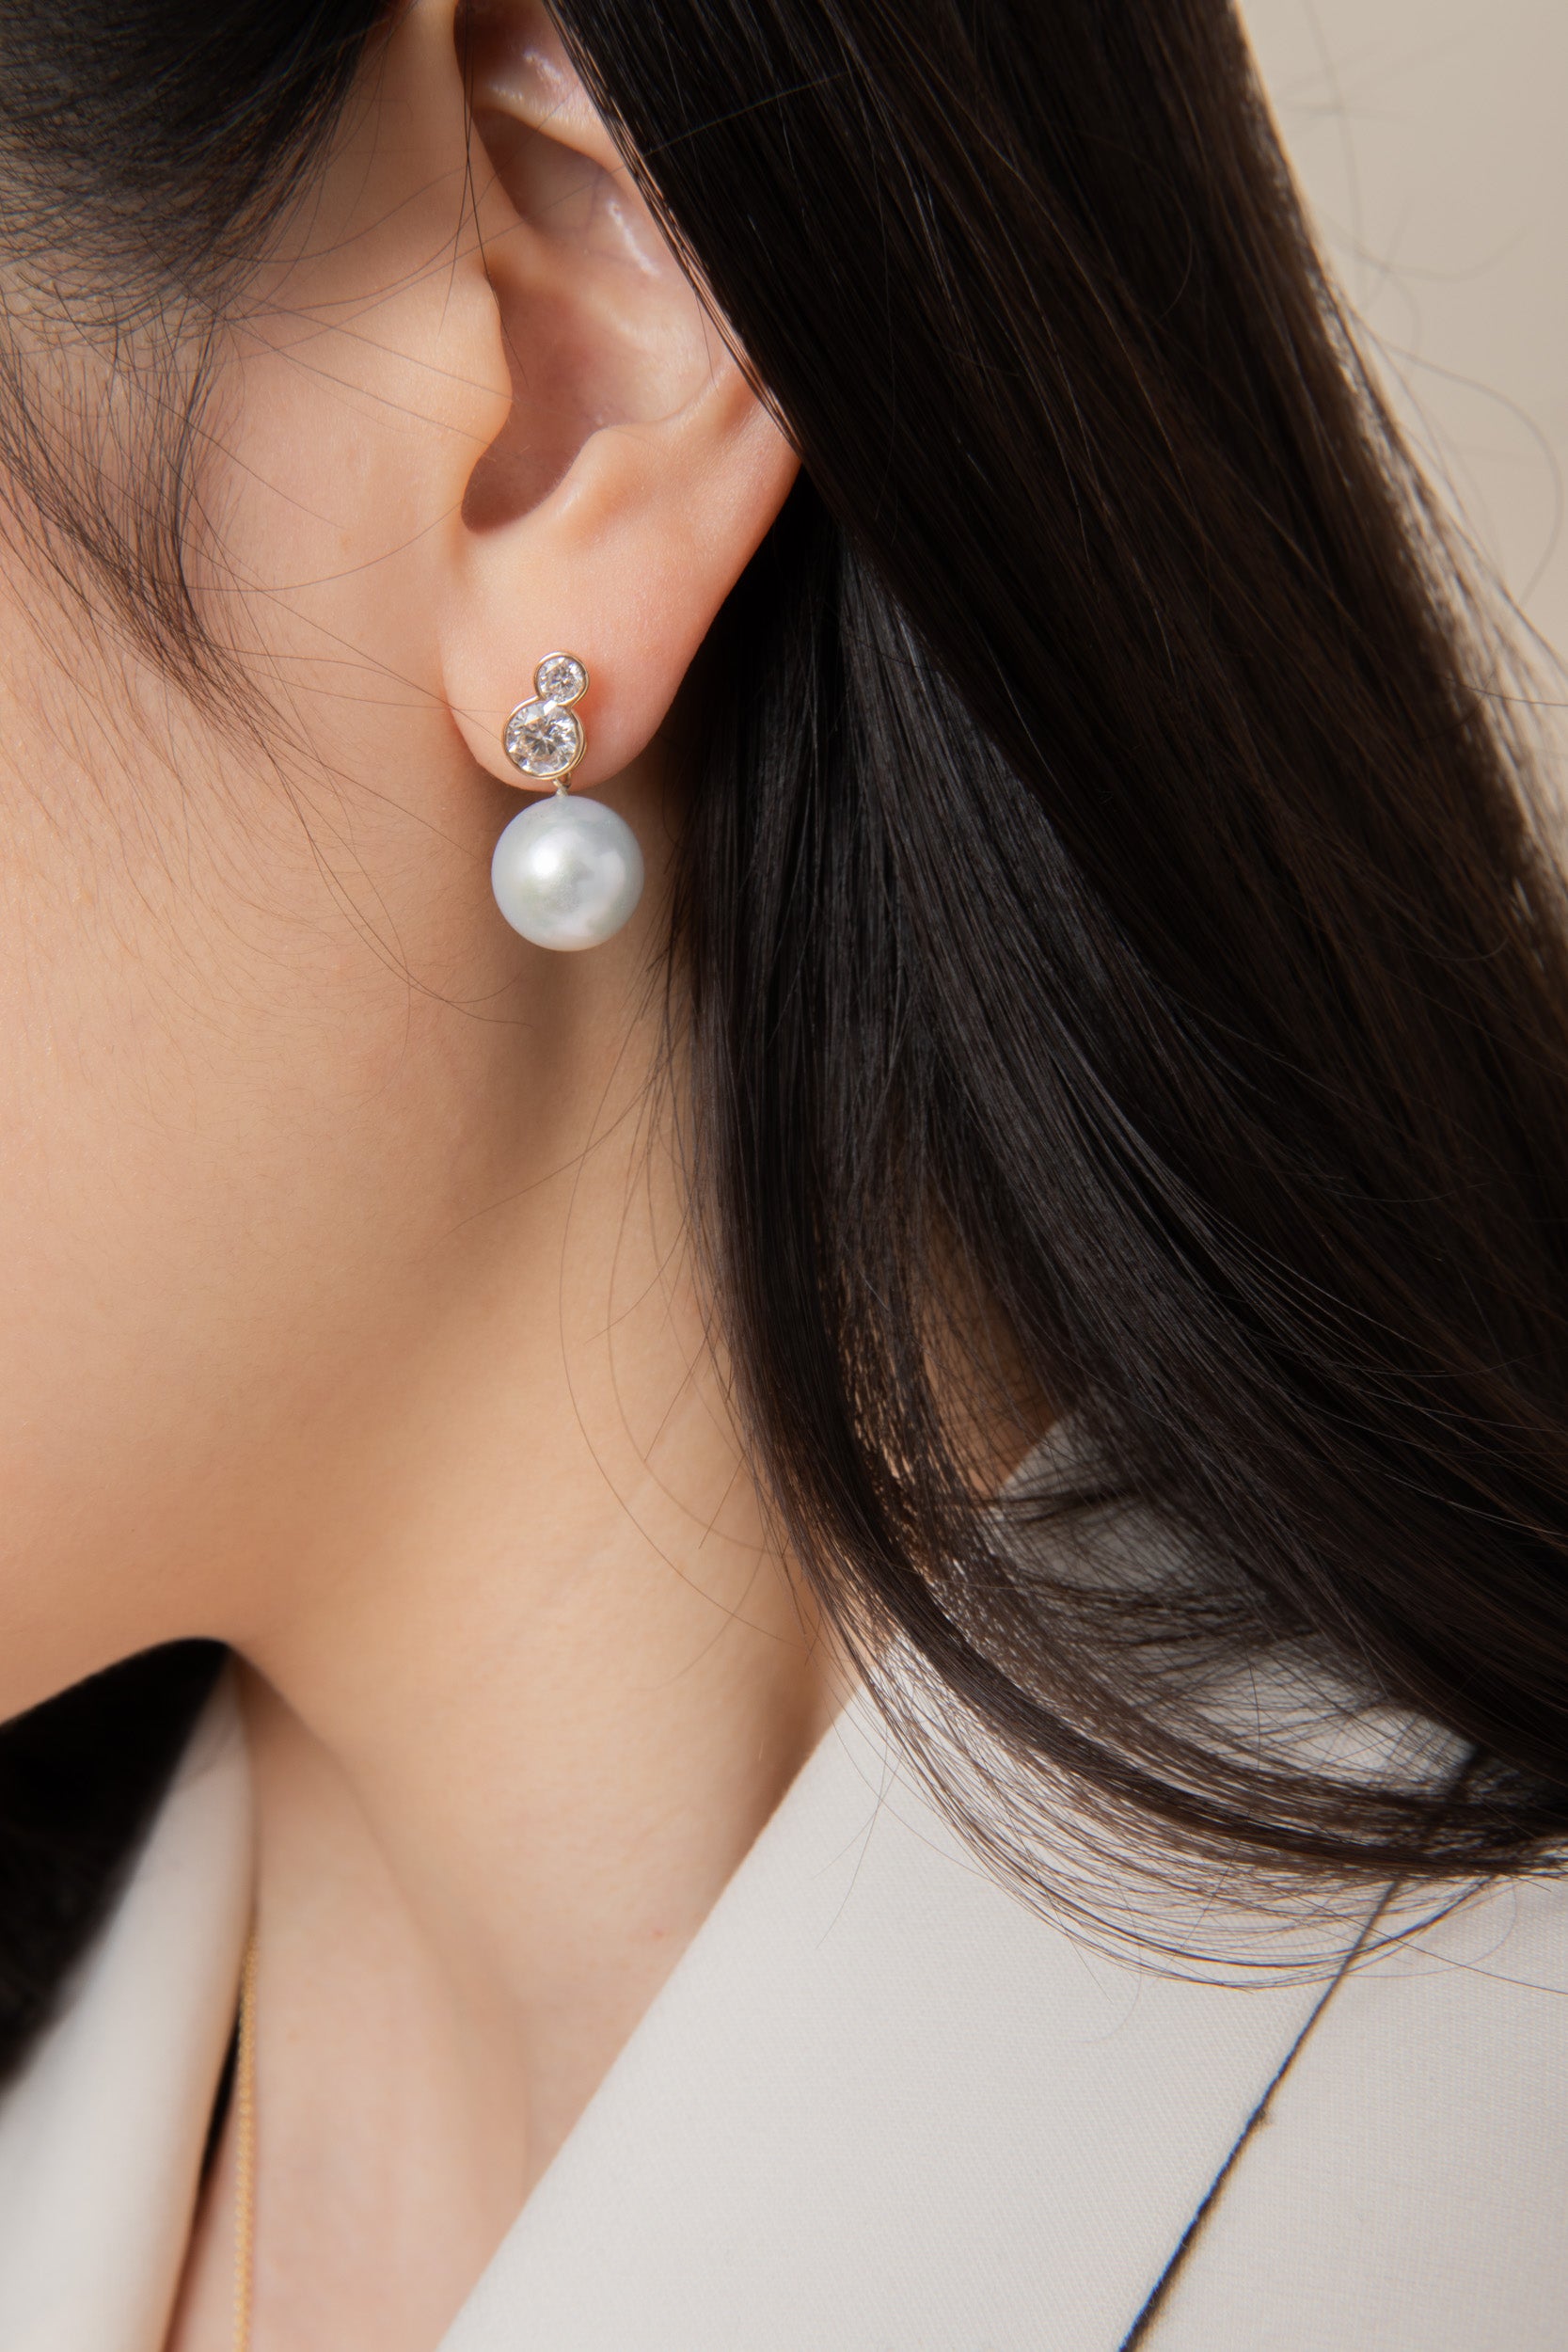 Cherub Pearl Earring Charm